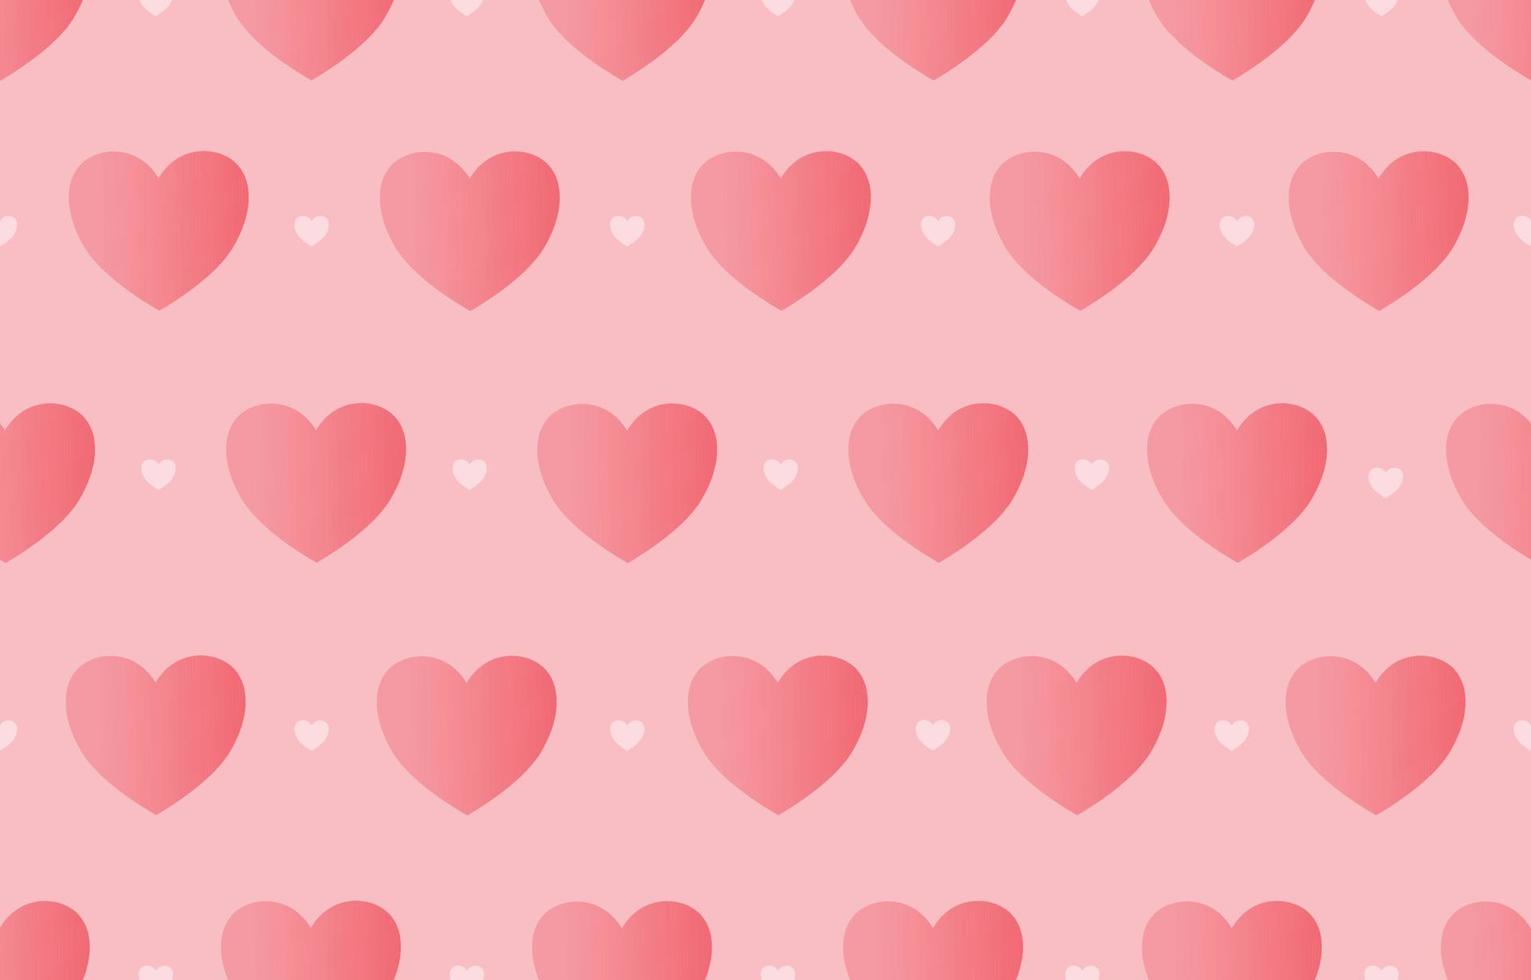 sömlöst mönster alla hjärtans dag bakgrund med rosa hjärtan söt design som används för tryck, tapeter, dekoration, tyg, textil vektorillustration vektor